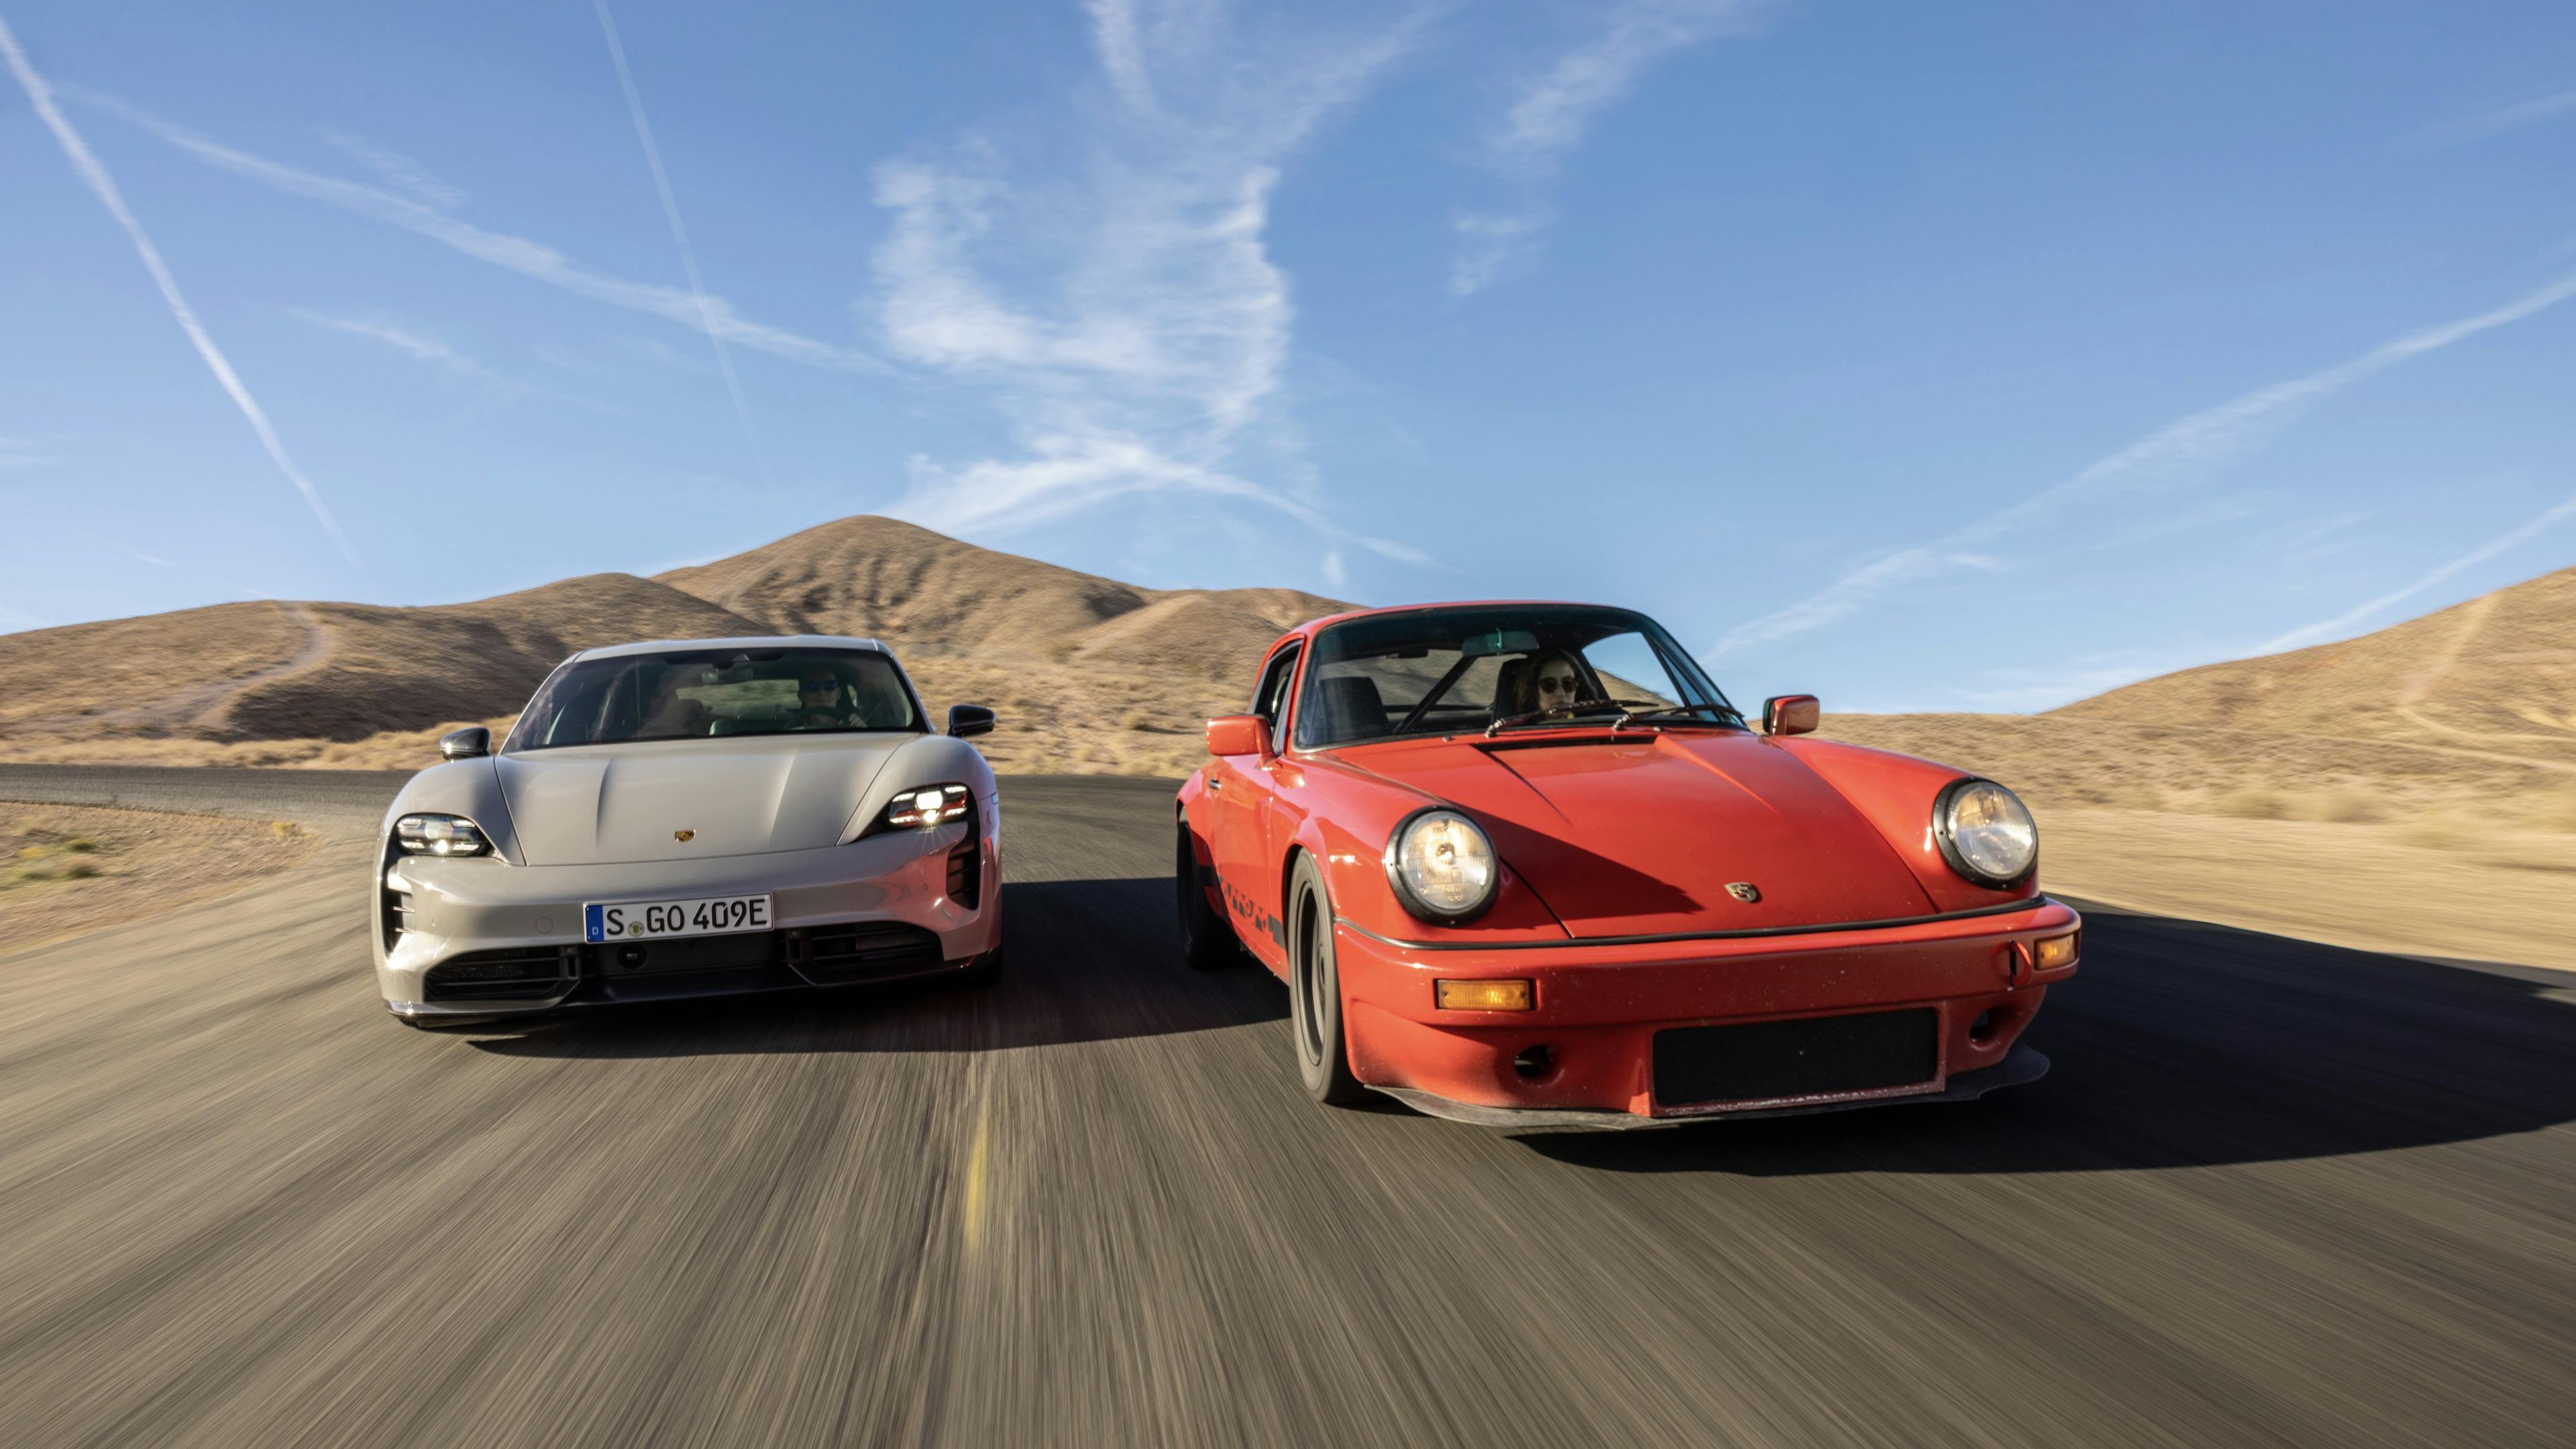 Frontansicht eines klassischen Porsche 911 und eines elektrischen Porsche Taycan, die nebeneinander auf der kalifornischen Rennstrecke "Willow Springs" fahren.